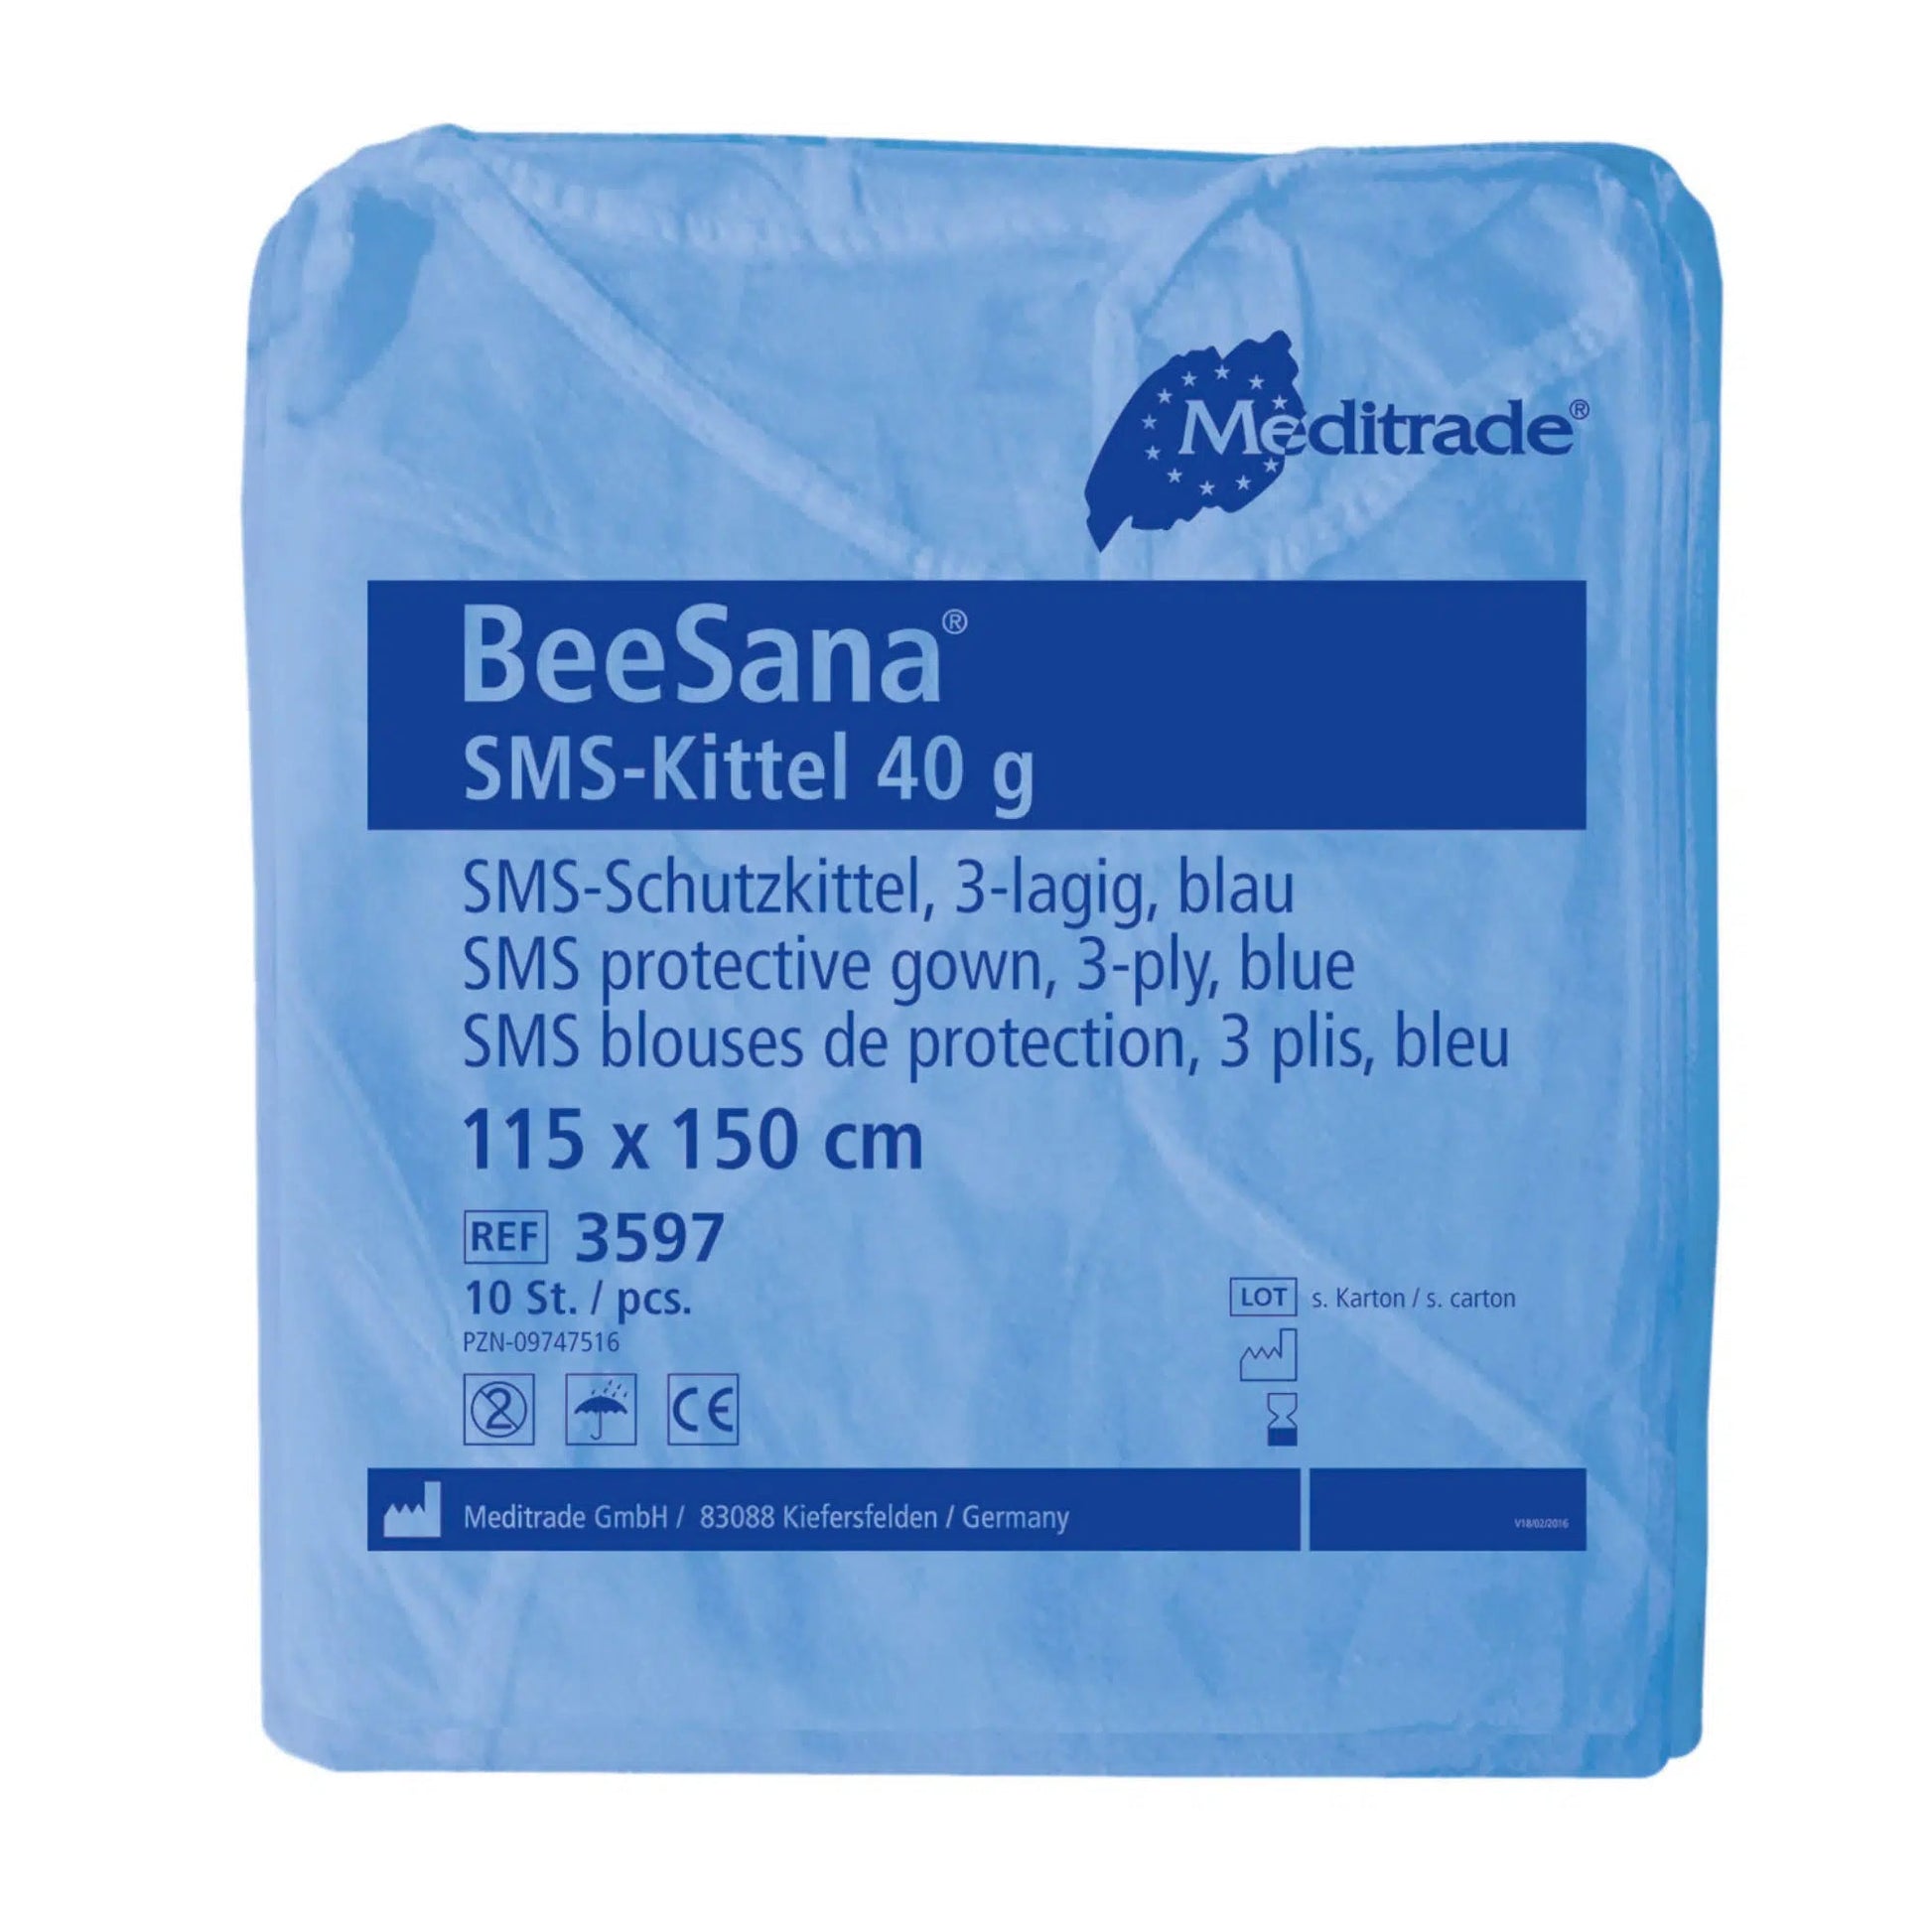 MEDITRADE BEESANA® SMS-KITTEL 40G